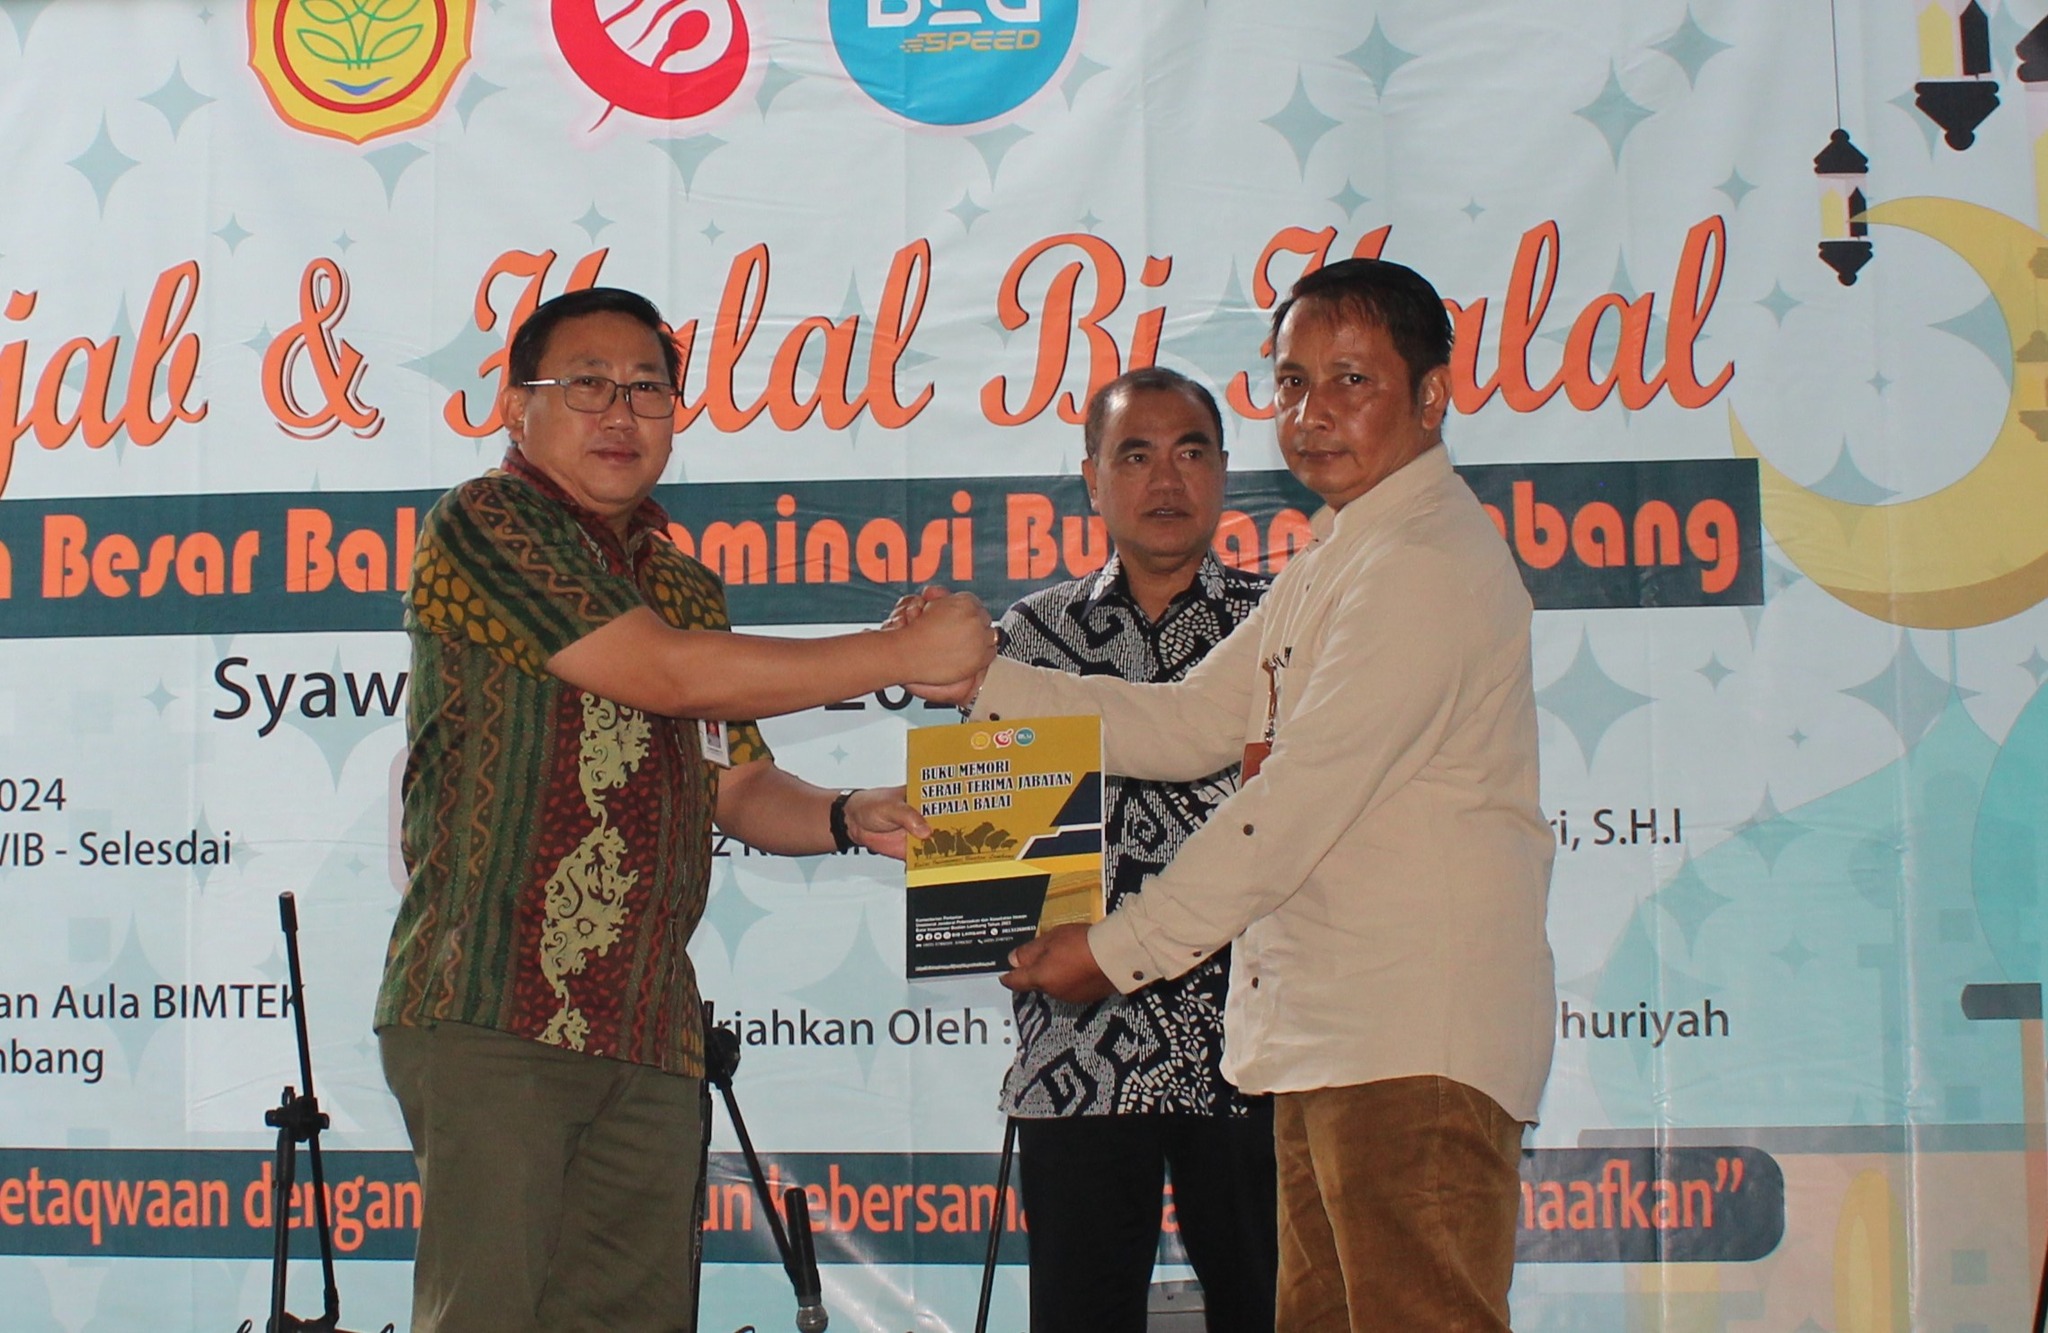 BIB Lembang News 6